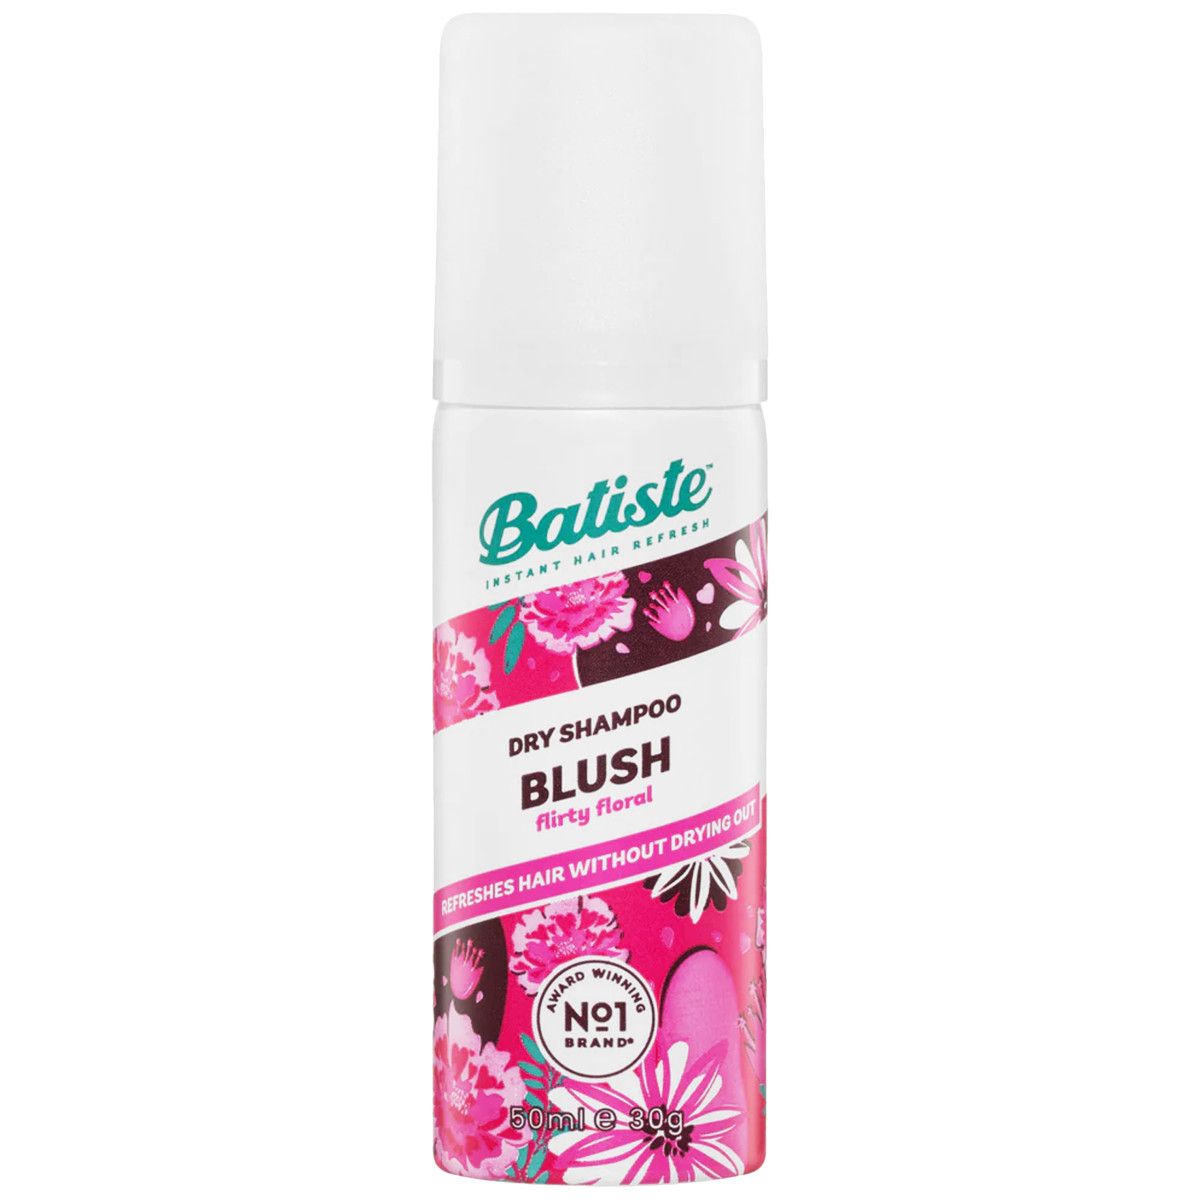 Batiste Blush Dry, suchy szampon z nutą piżma, dodaje włosom objętości 50ml